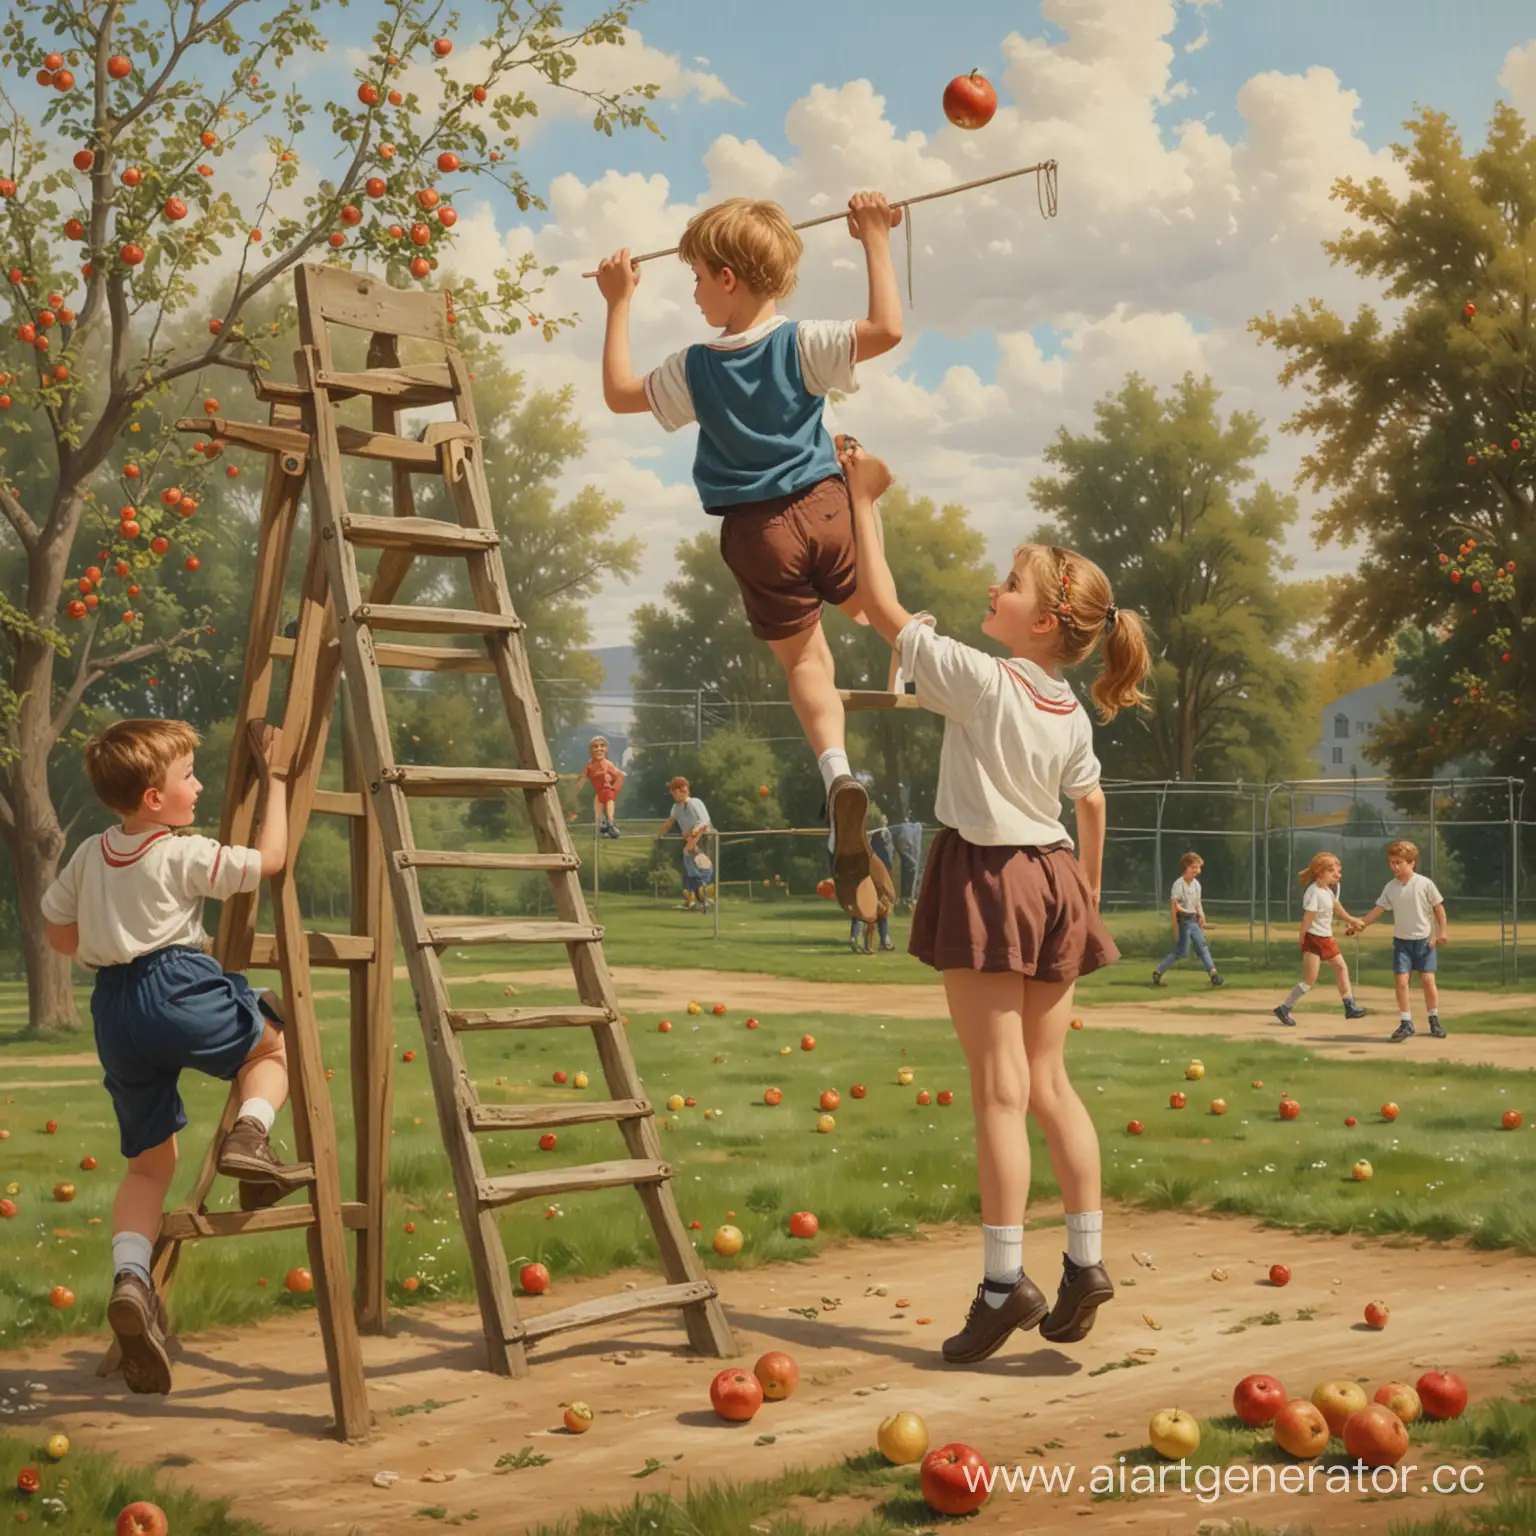 картина "школа" мальчик собирает яблоки,а девочка в это время рядом с ним помогает ему придерживая лестницу,тем временем на заднем фоне на спортивной площадке изображены мальчики которые играют в мяч, а рядом с ними прыгают девочки через скакалку 